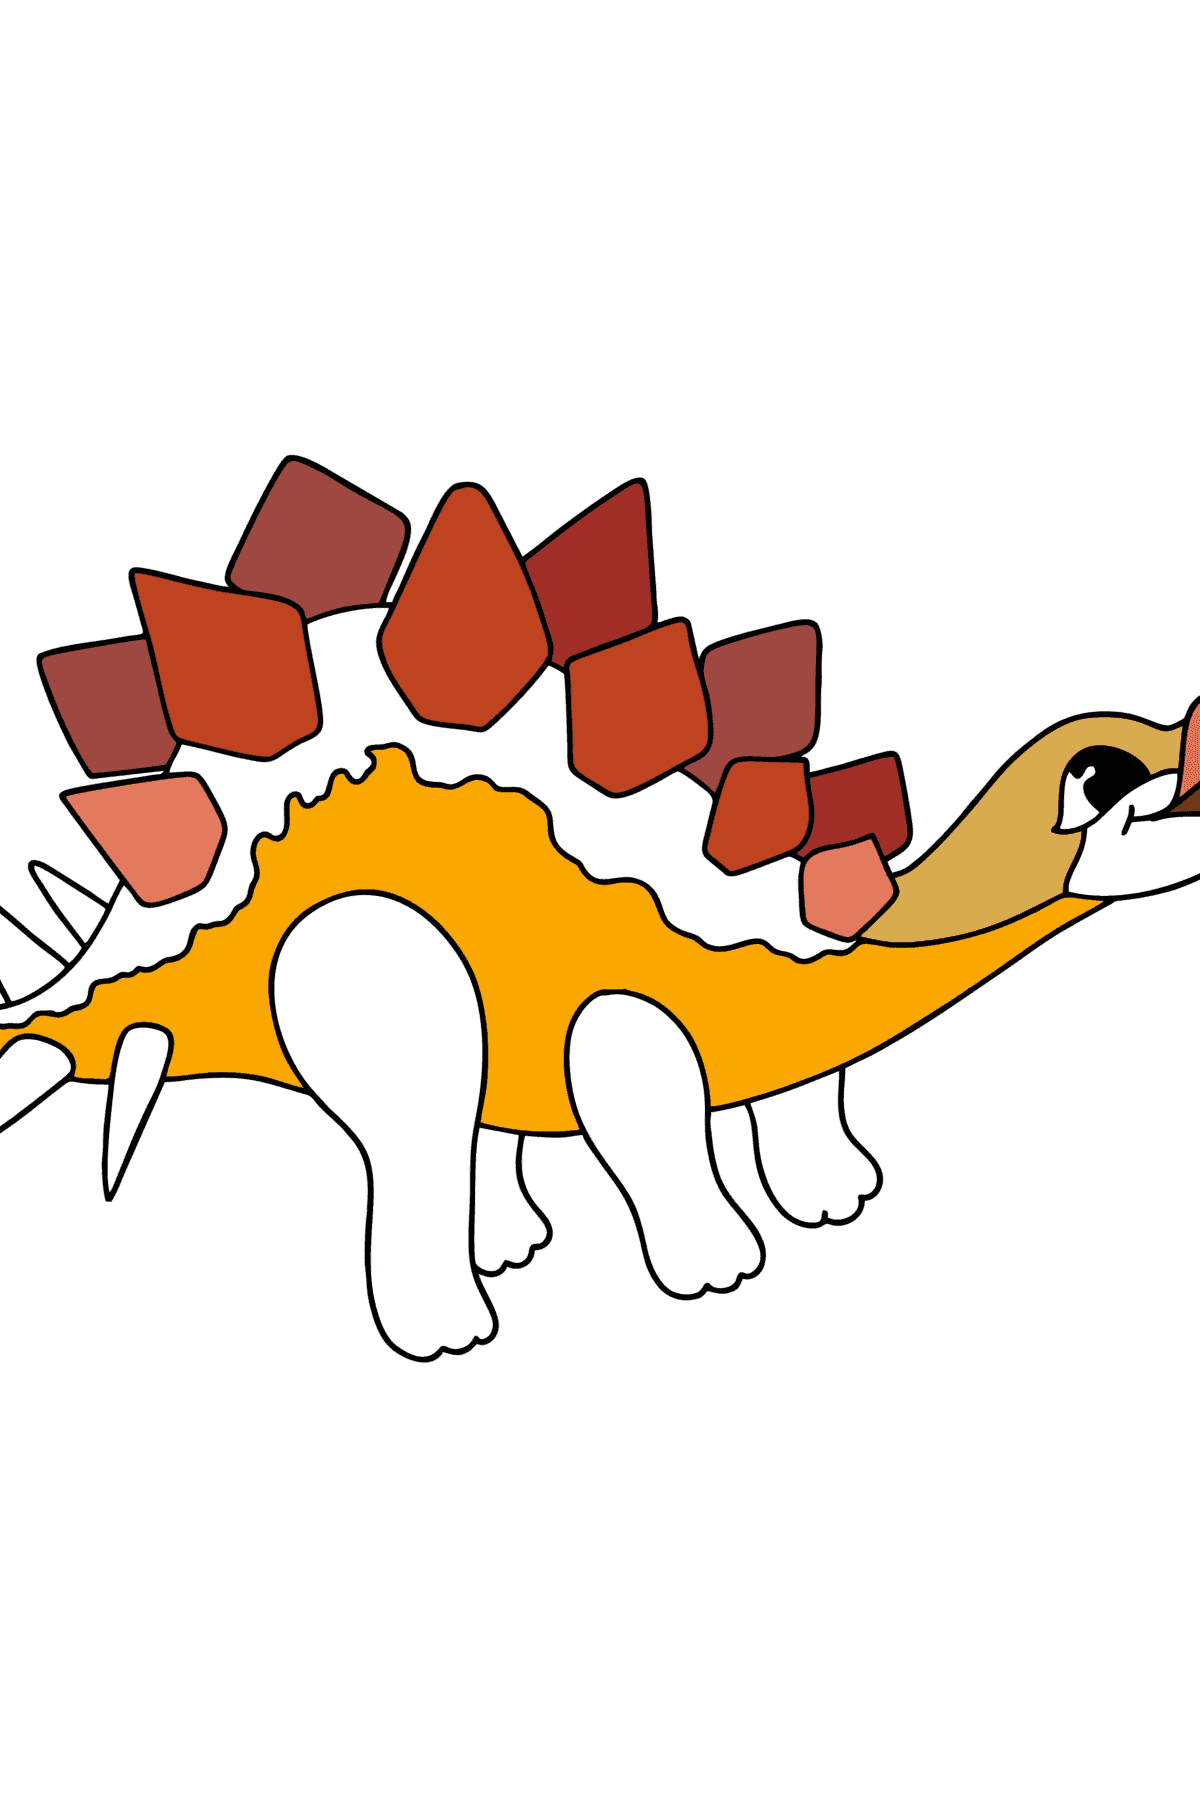 Ausmalbild Stegosaurus - Malvorlagen für Kinder